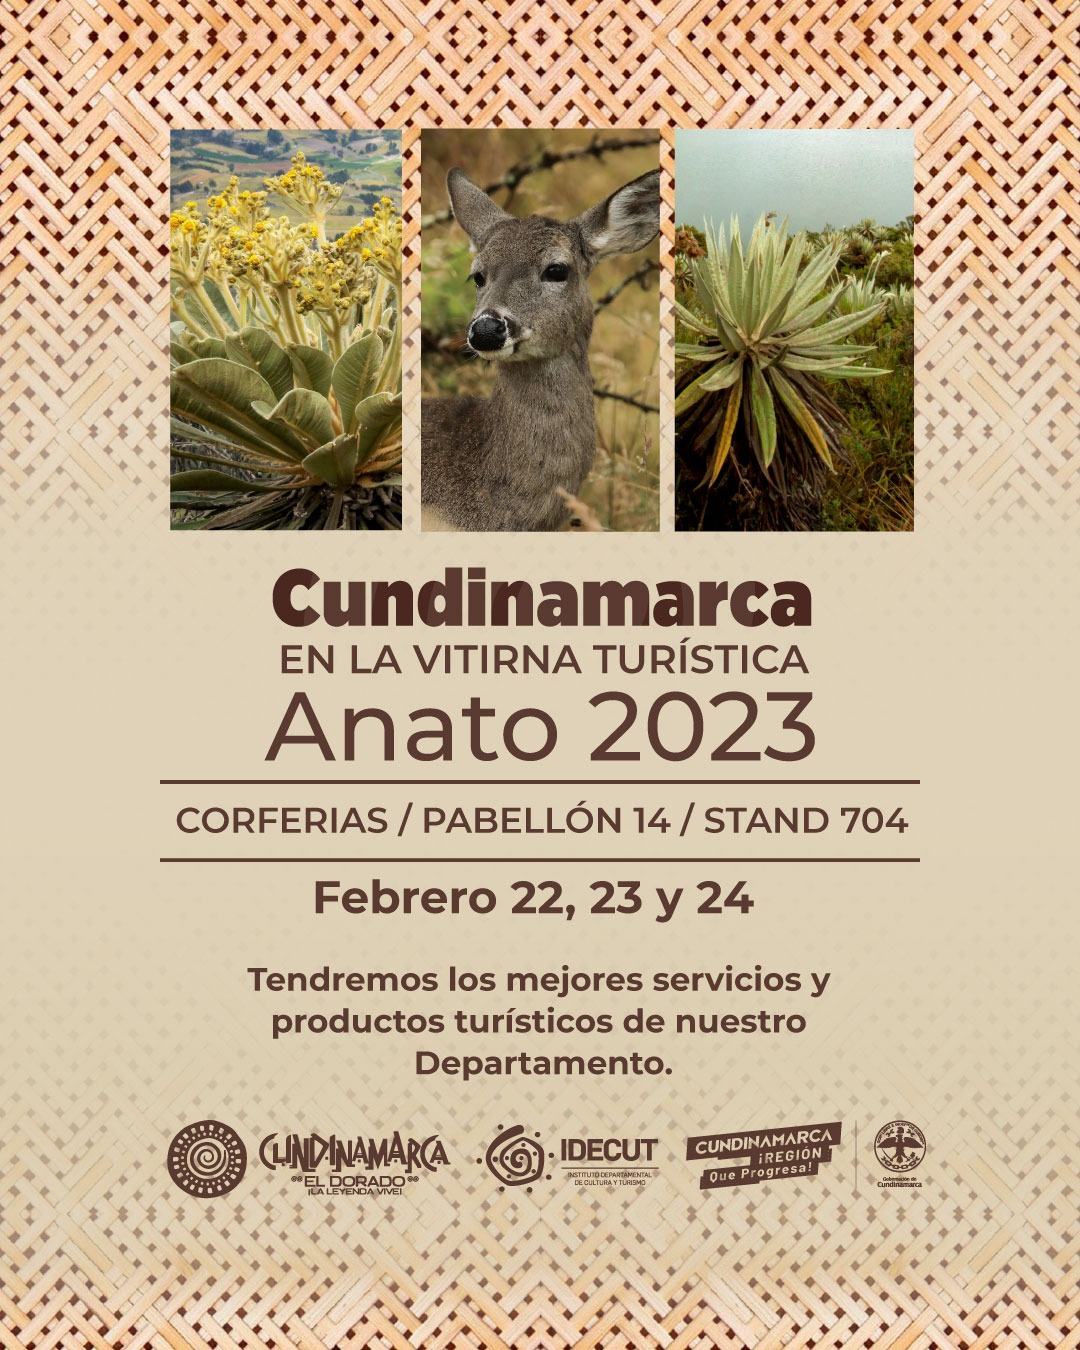 Cundinamarca, más de 20 años presente en ANATO 